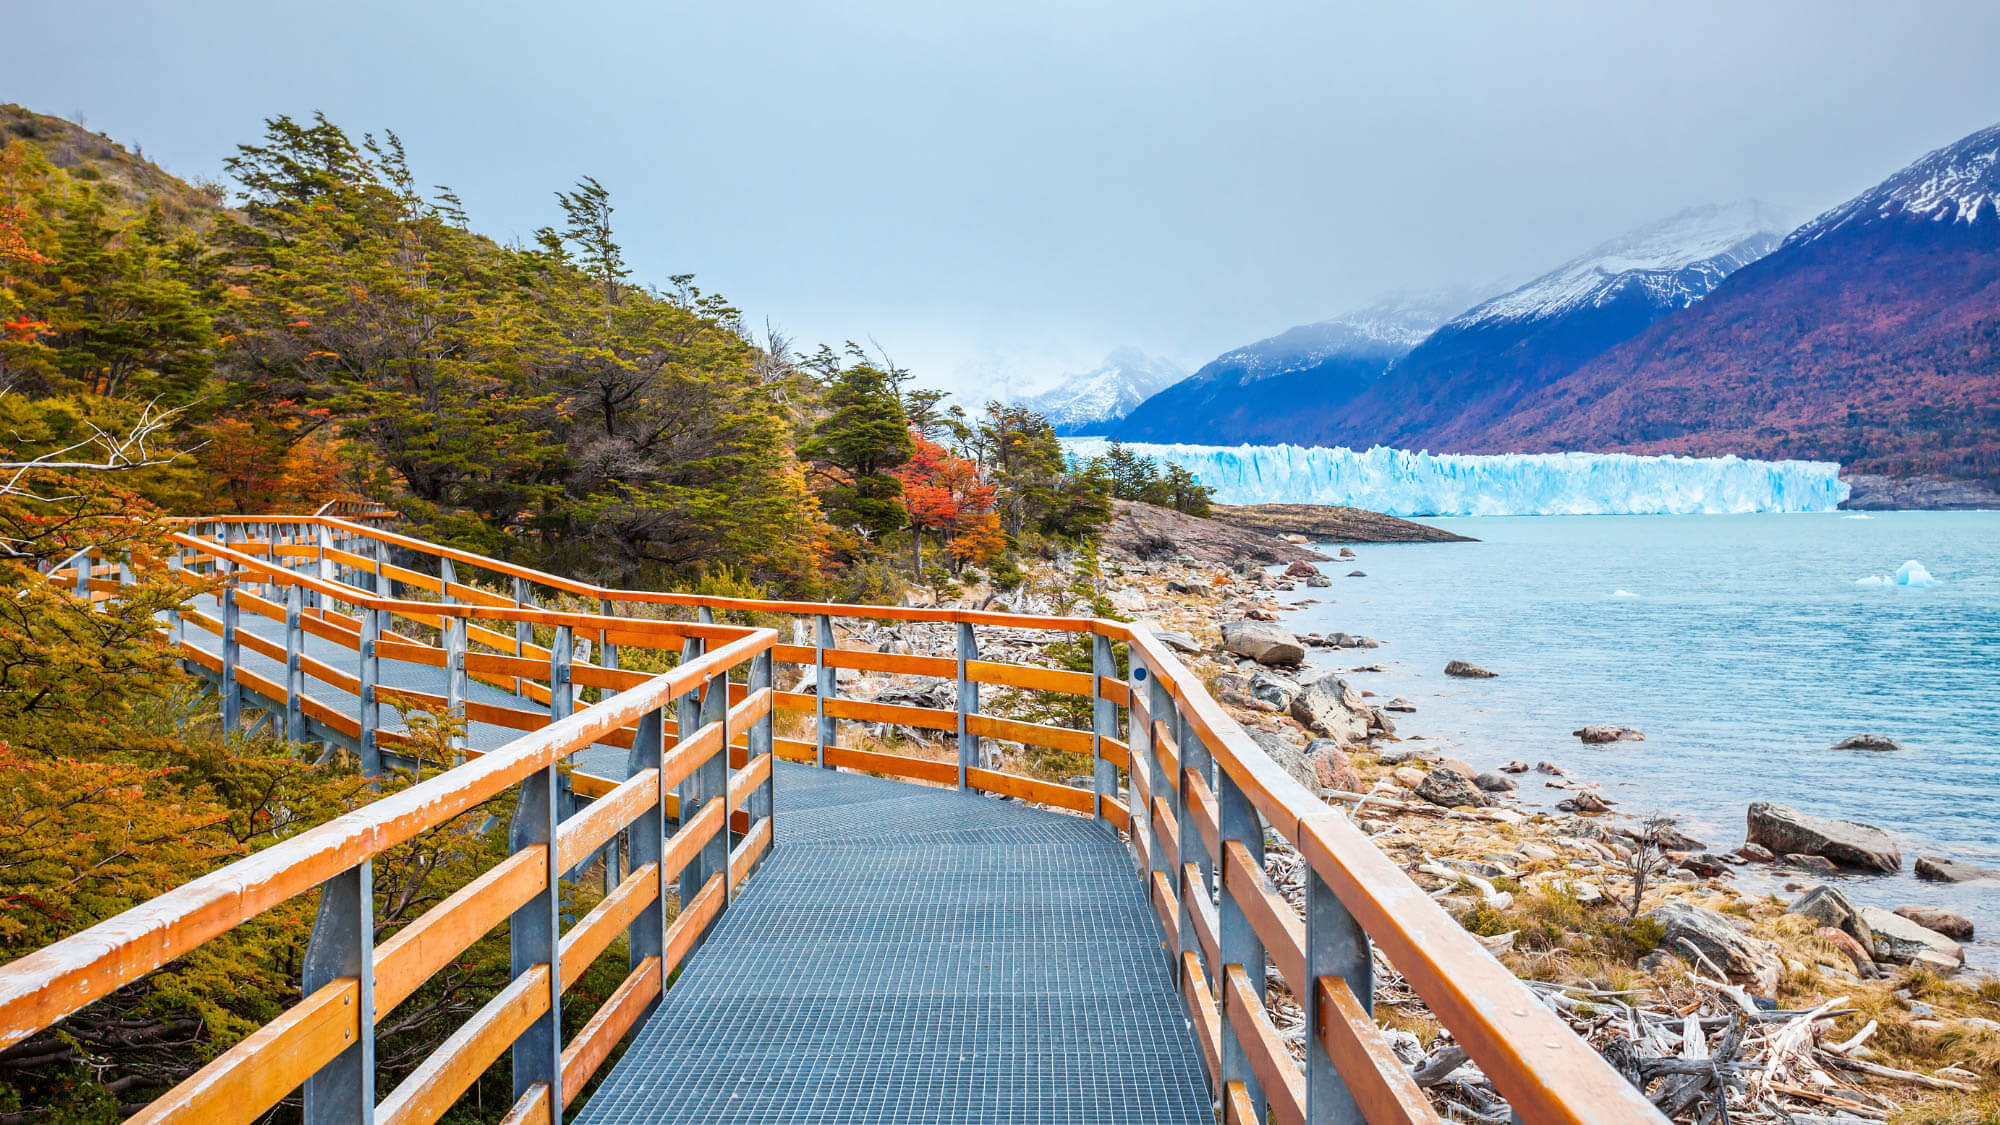 Wooden walkways overlooking the Perito Moreno Glacier